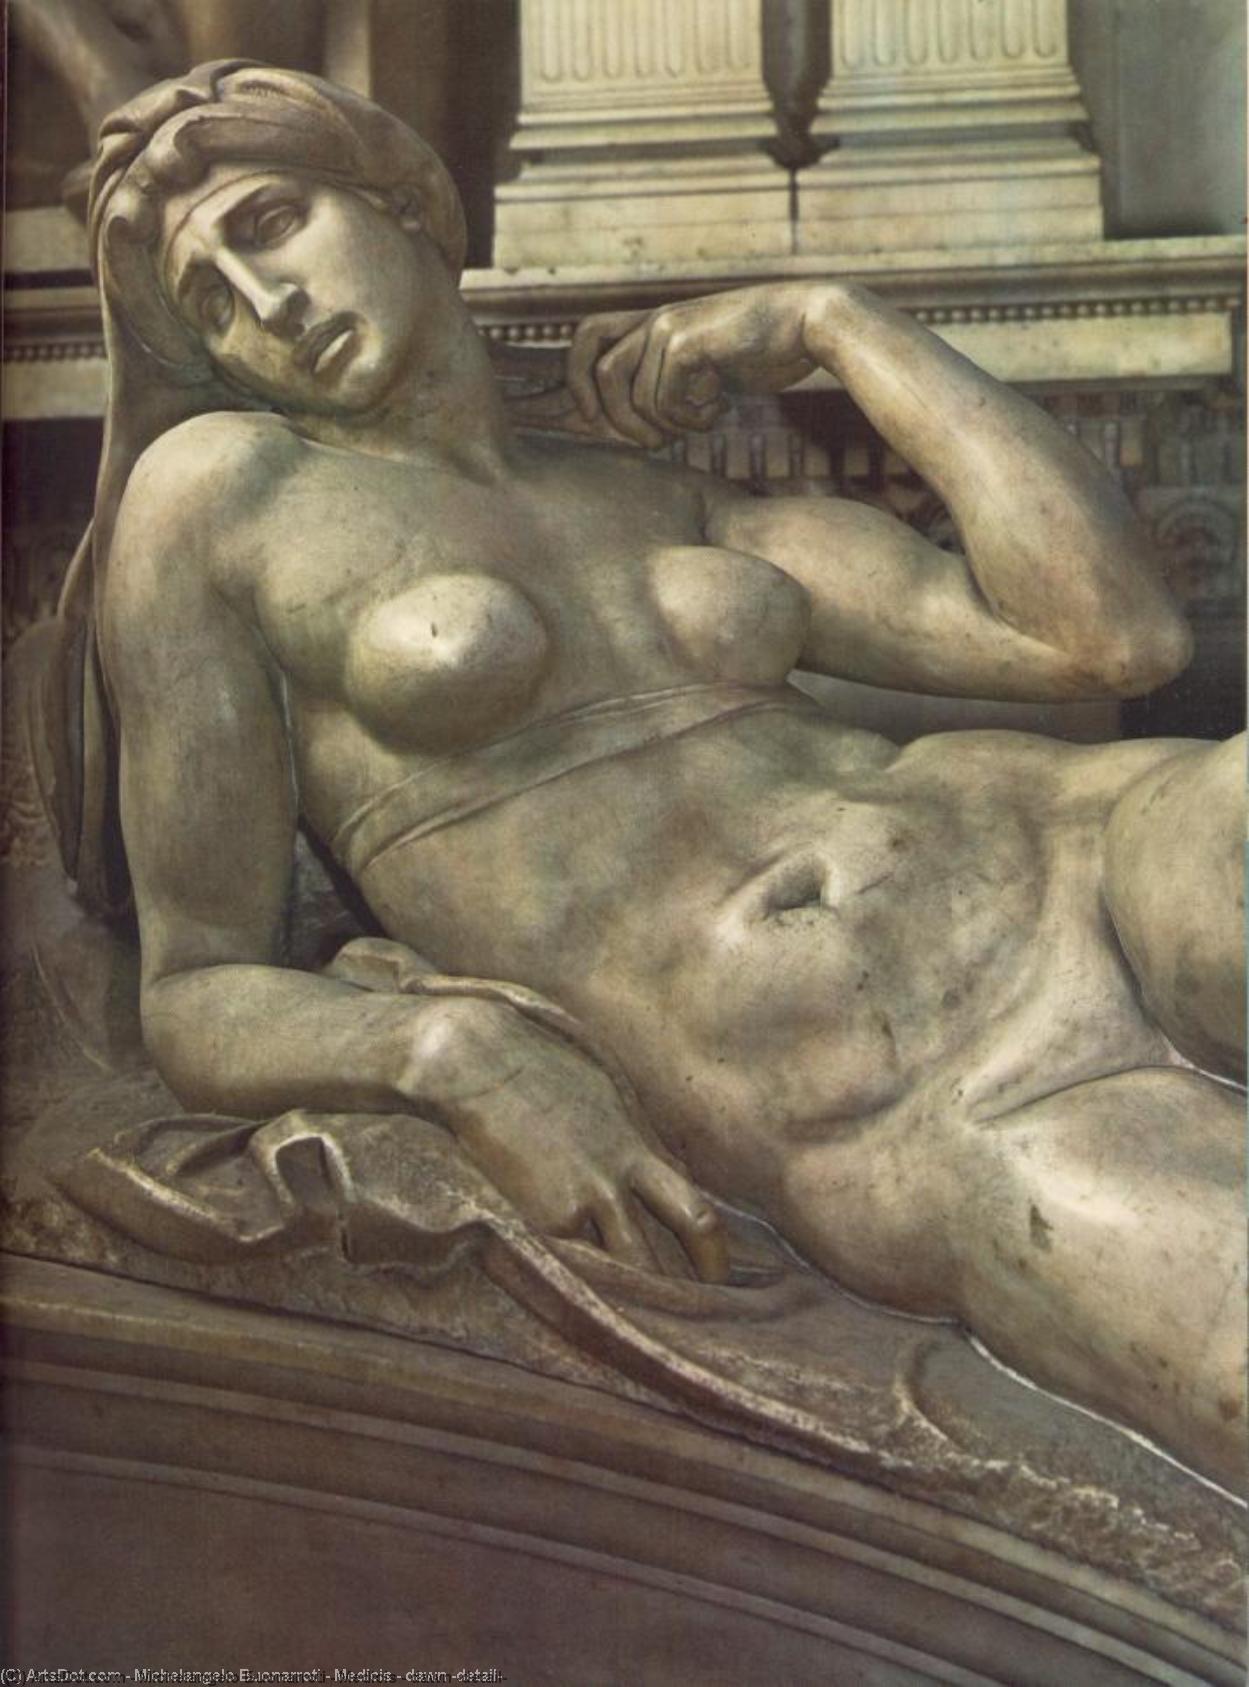 WikiOO.org - Enciclopedia of Fine Arts - Pictura, lucrări de artă Michelangelo Buonarroti - Medicis - dawn (detail)